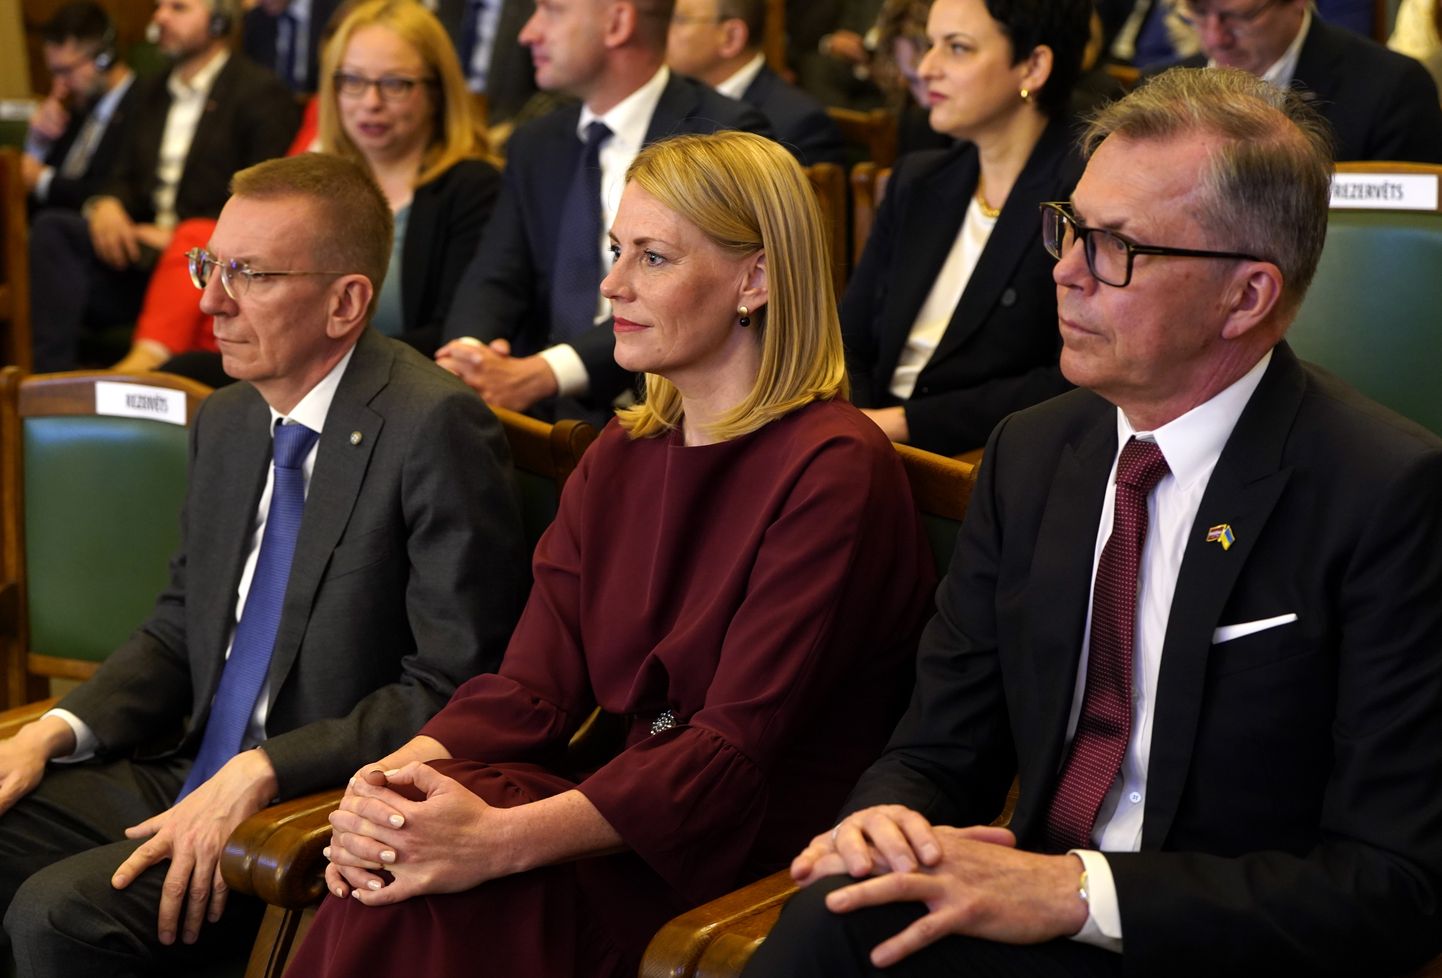 Valsts prezidenta amata kandidāti - ārlietu ministrs Edgars Rinkēvičs (no kreisās), publiskās pārvaldības eksperte Elīna Pinto un uzņēmējs Uldis Pīlēns Saeimas ārkārtas sēdes laikā, kurā notiek Valsts prezidenta vēlēšanas.